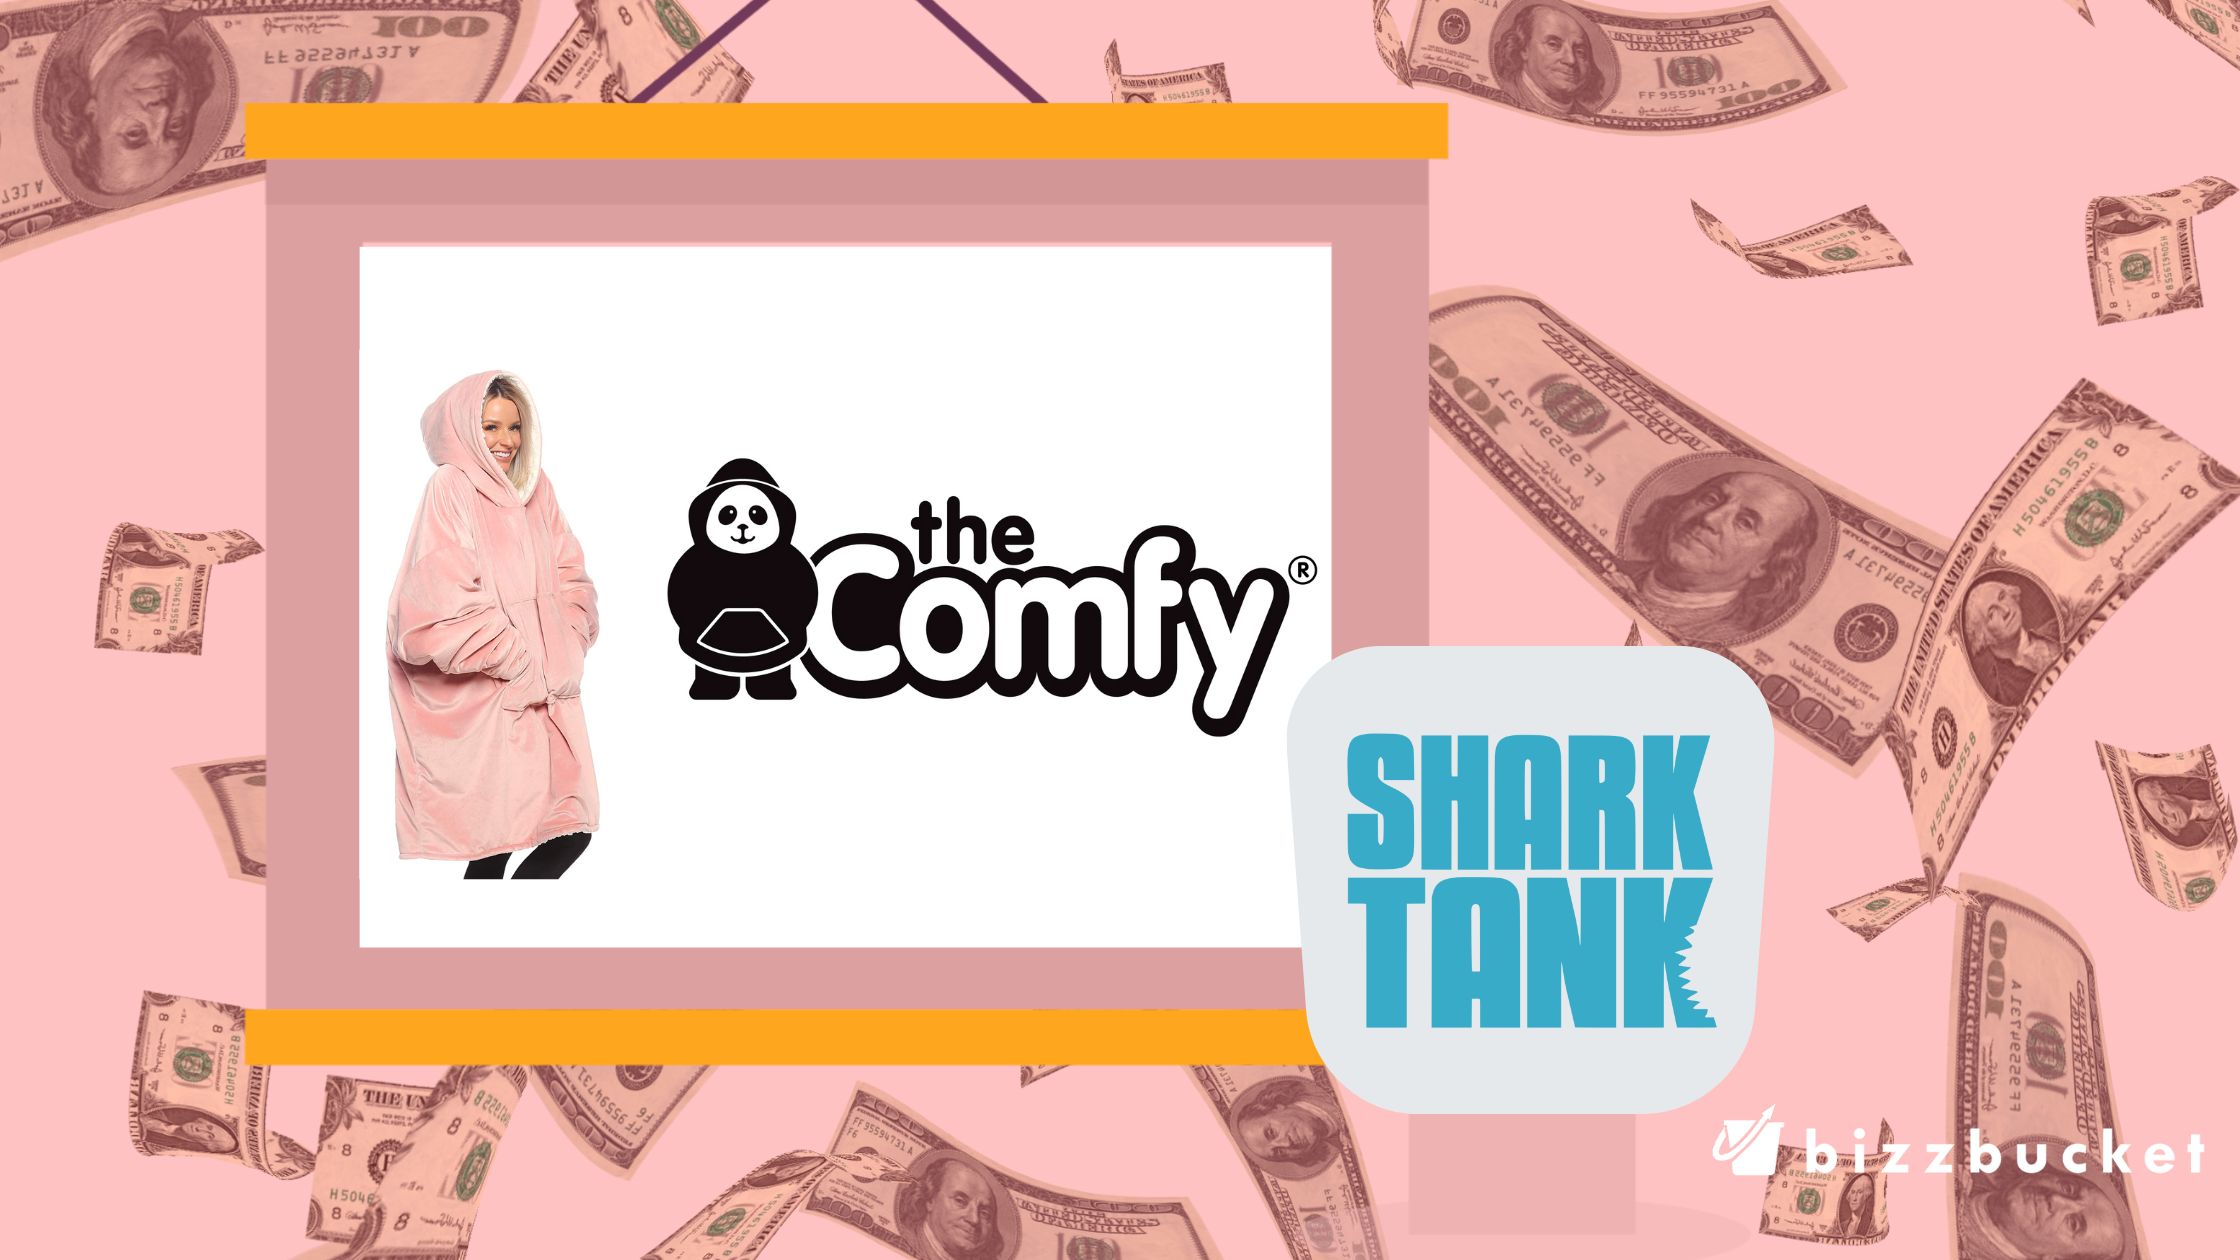 The Original Comfy shark tank update